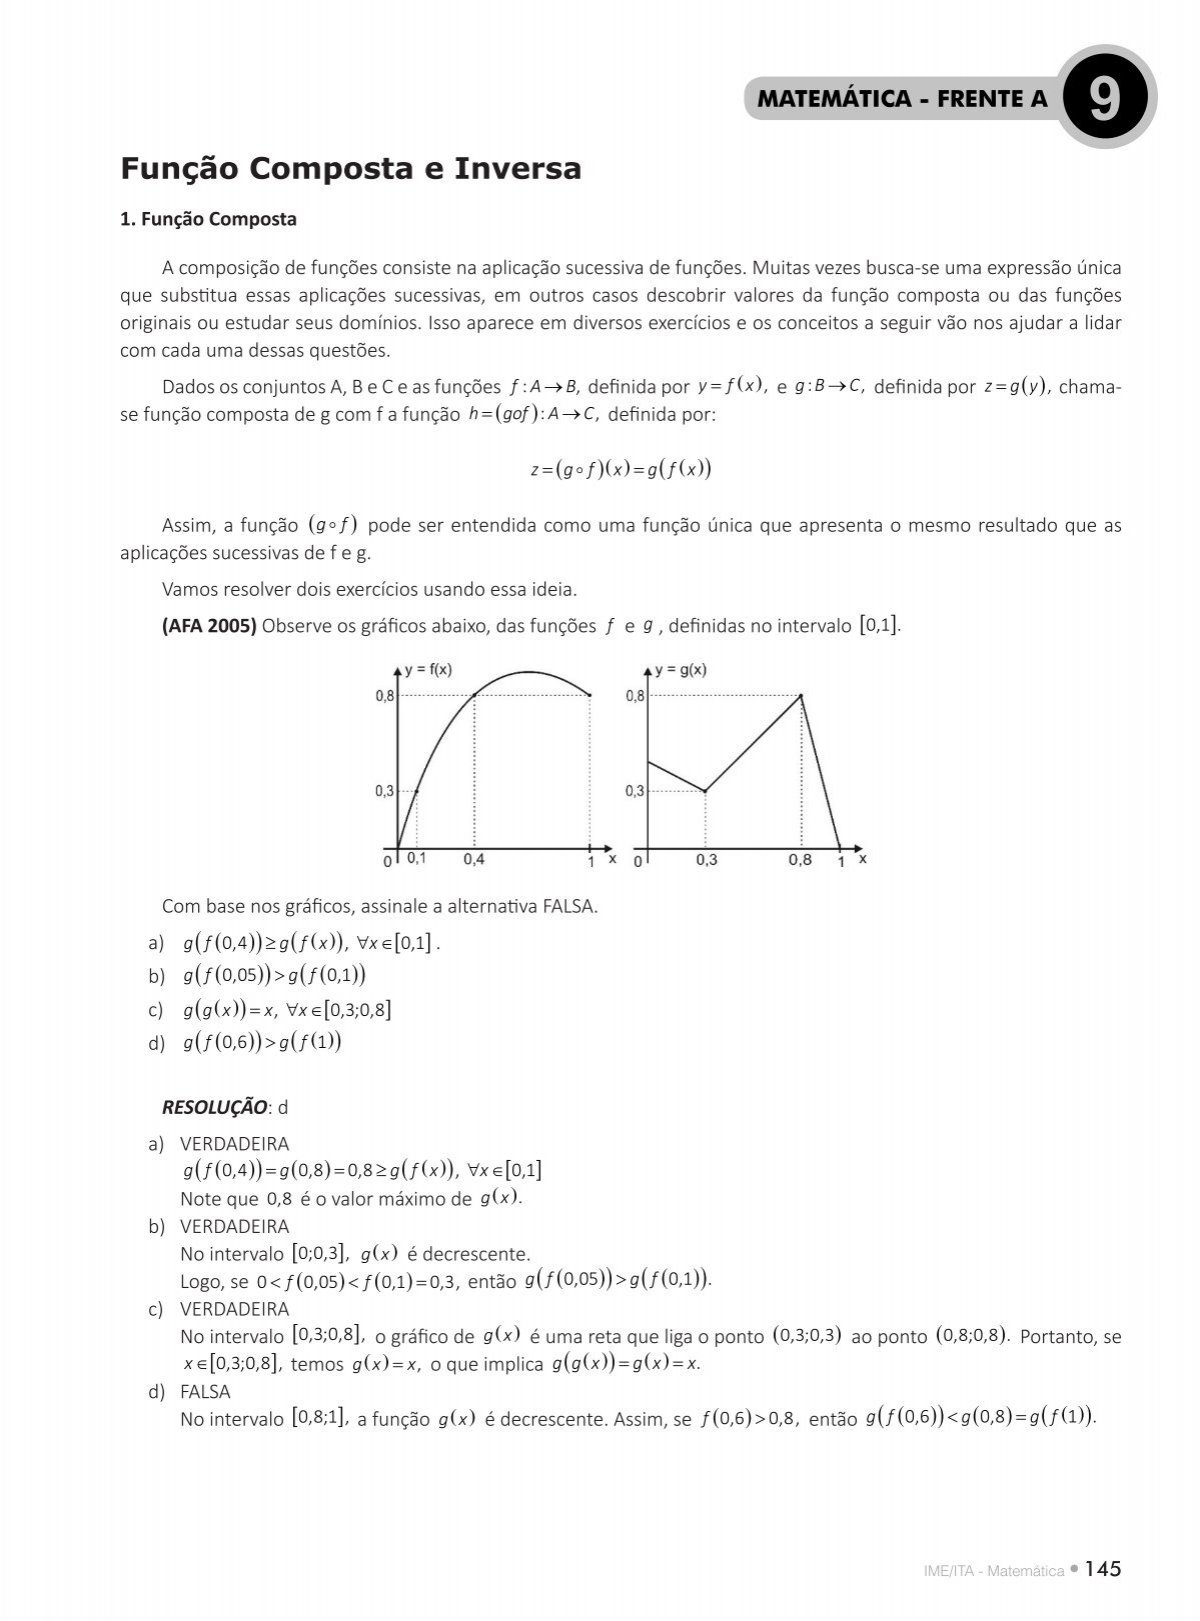 PUC –SP) Simplificação de fração polinomial 